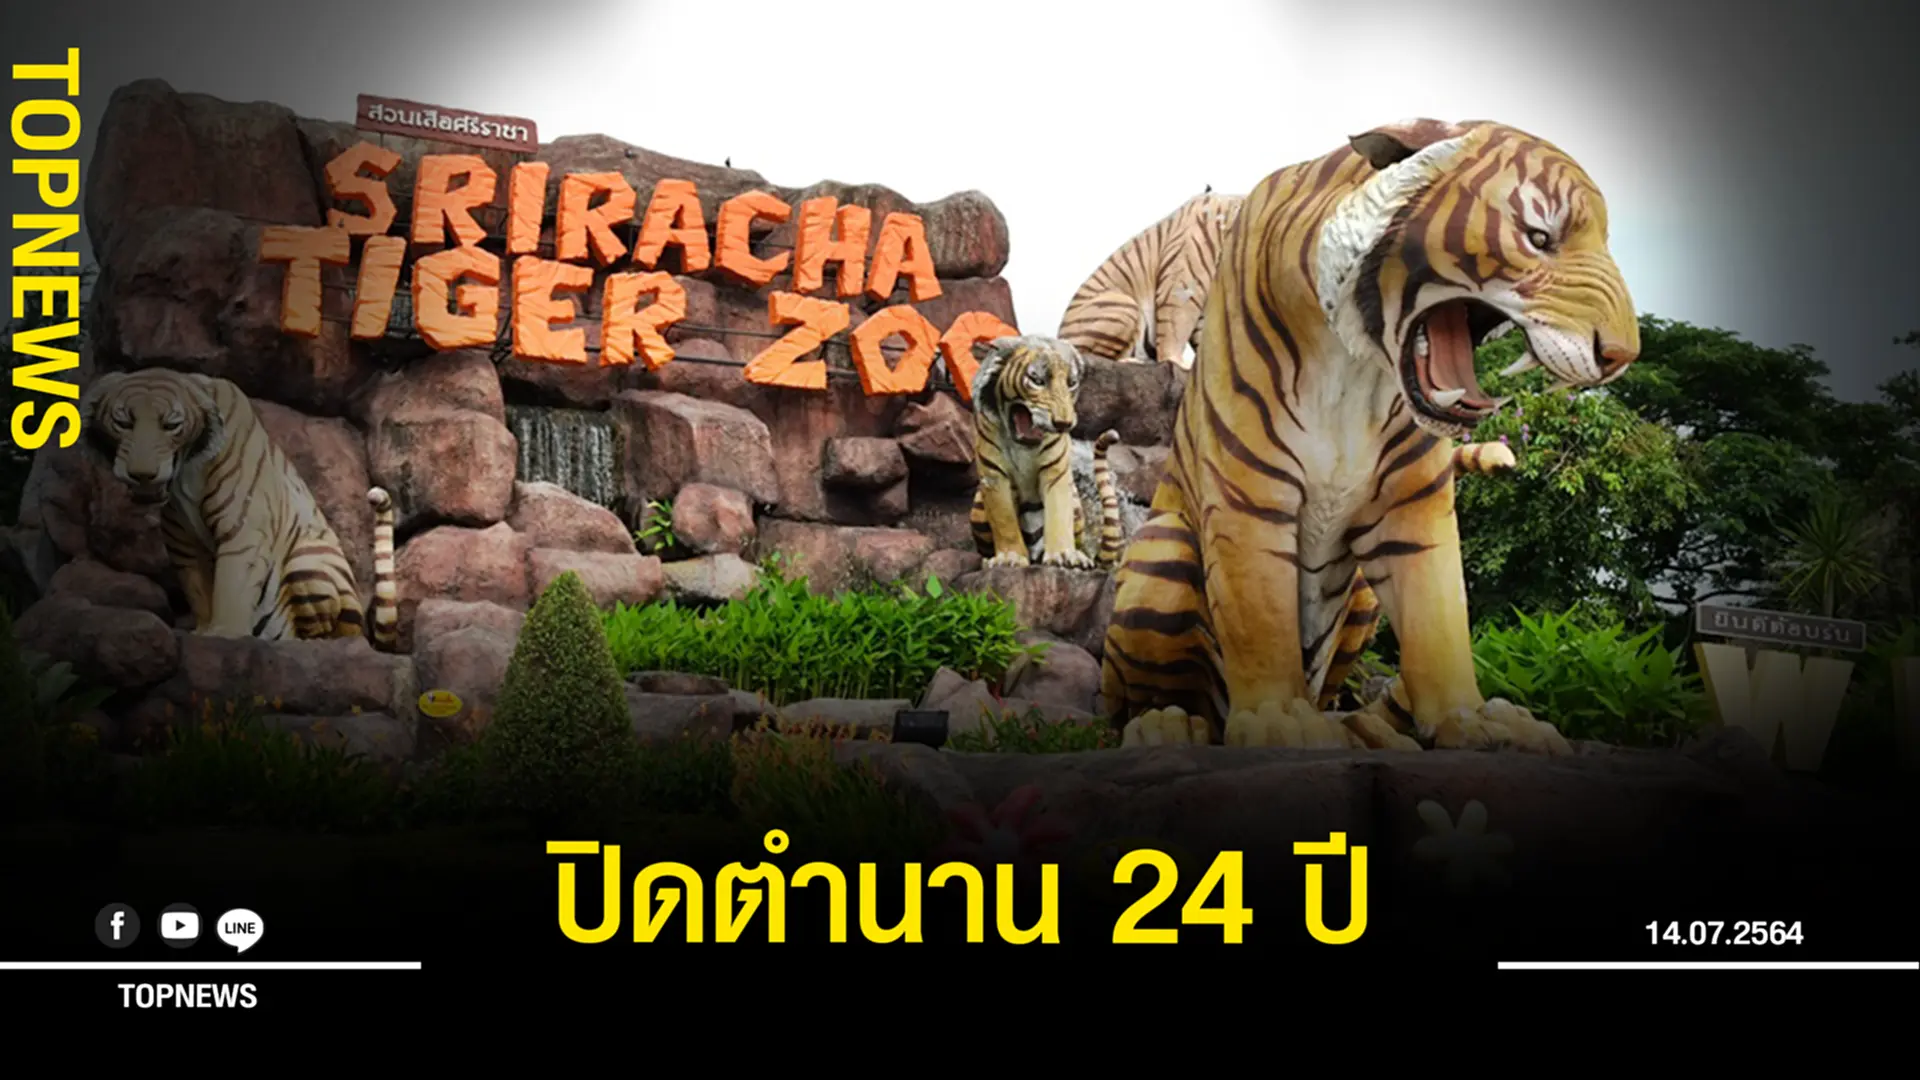 “สวนเสือศรีราชา” ประกาศเลิกกิจการ ปิดตำนานสวนสัตว์ 24 ปี